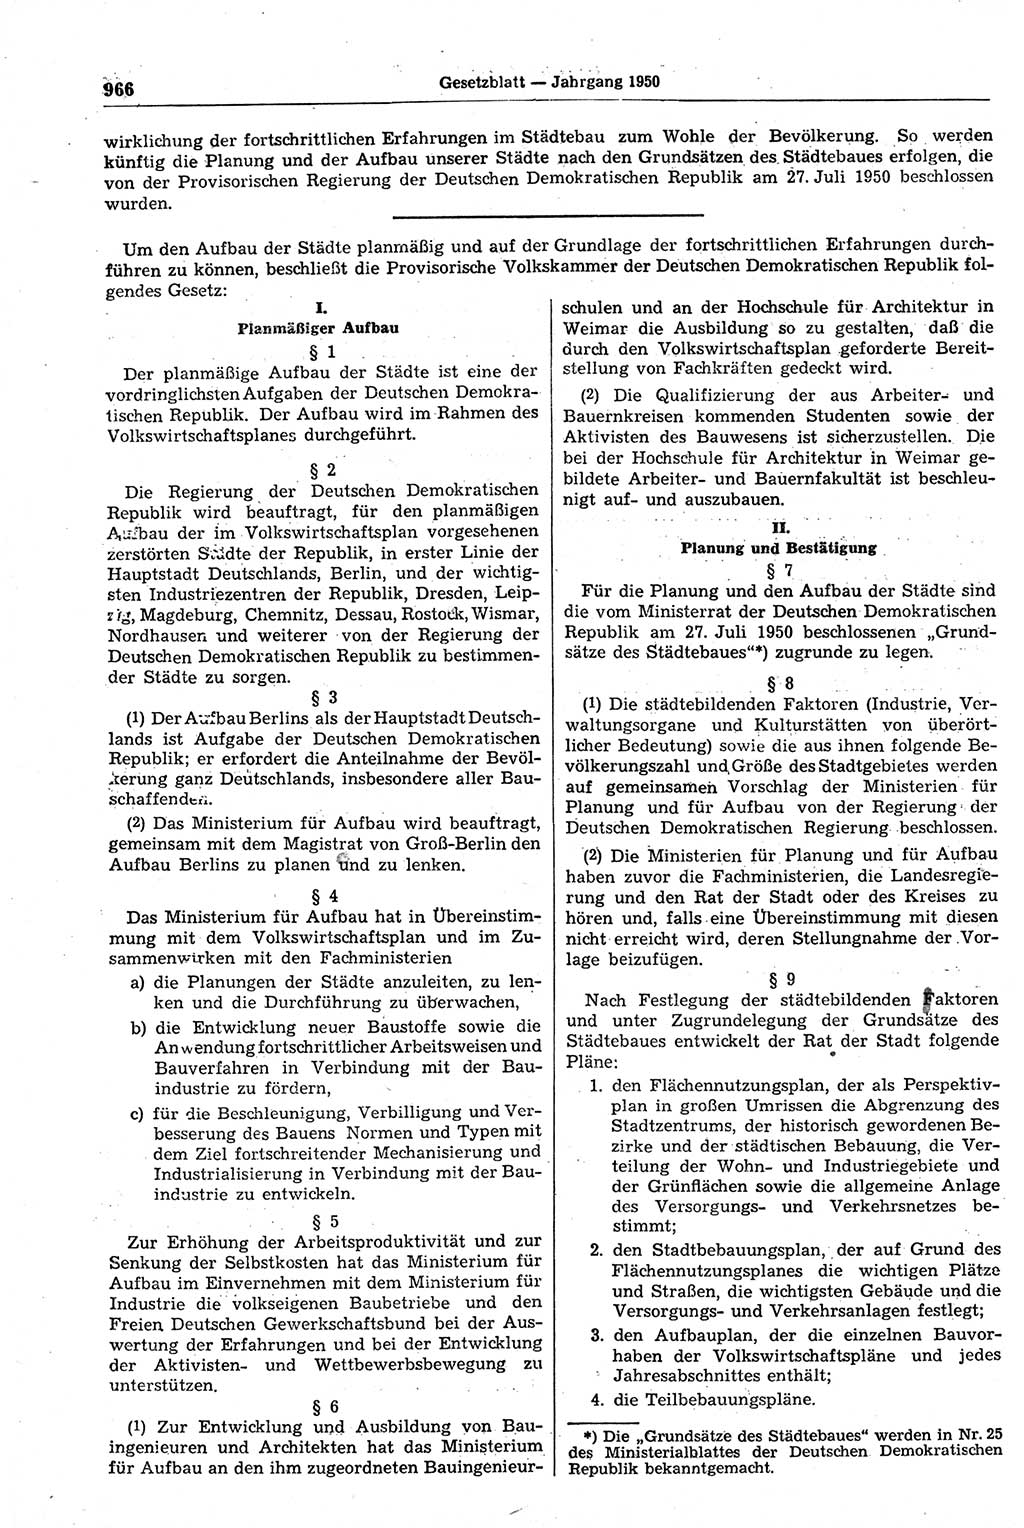 Gesetzblatt (GBl.) der Deutschen Demokratischen Republik (DDR) 1950, Seite 966 (GBl. DDR 1950, S. 966)